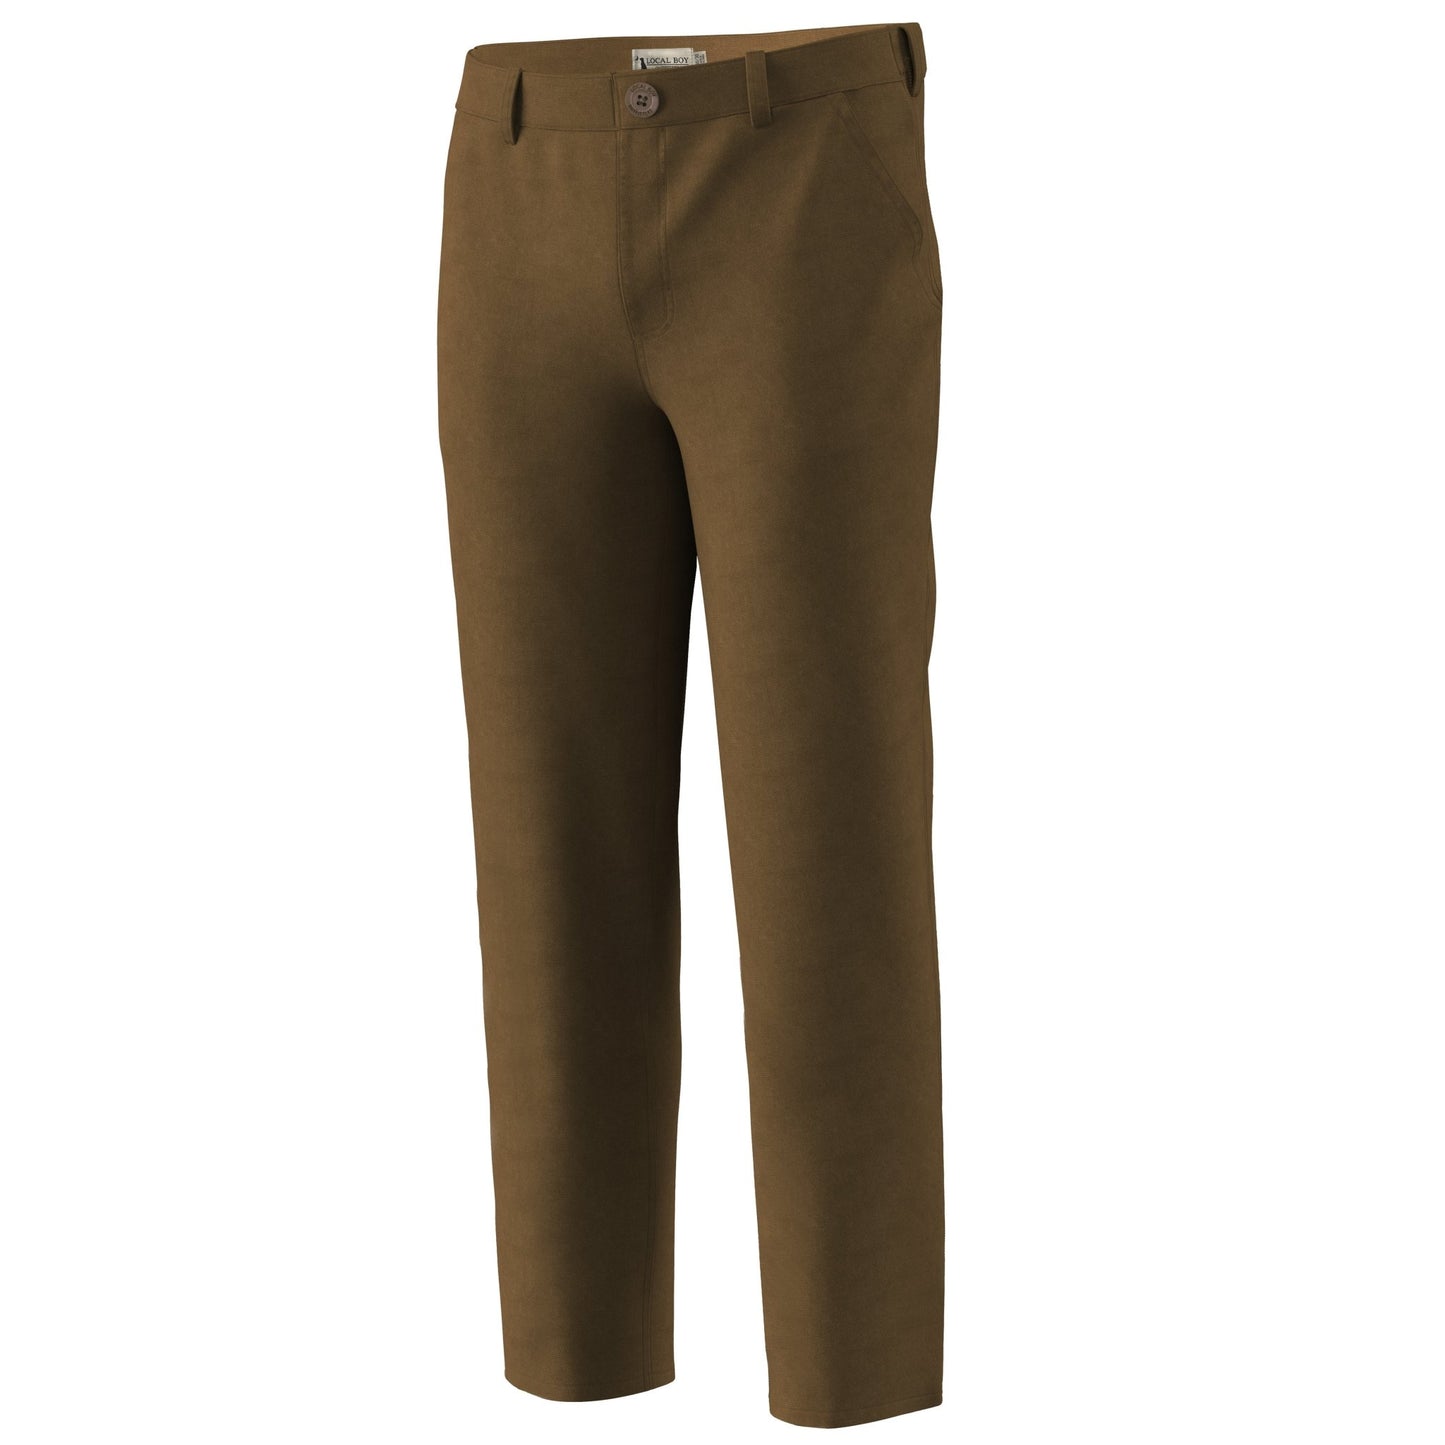 Men's Stretch Field Pants- Khaki - Mercantile213